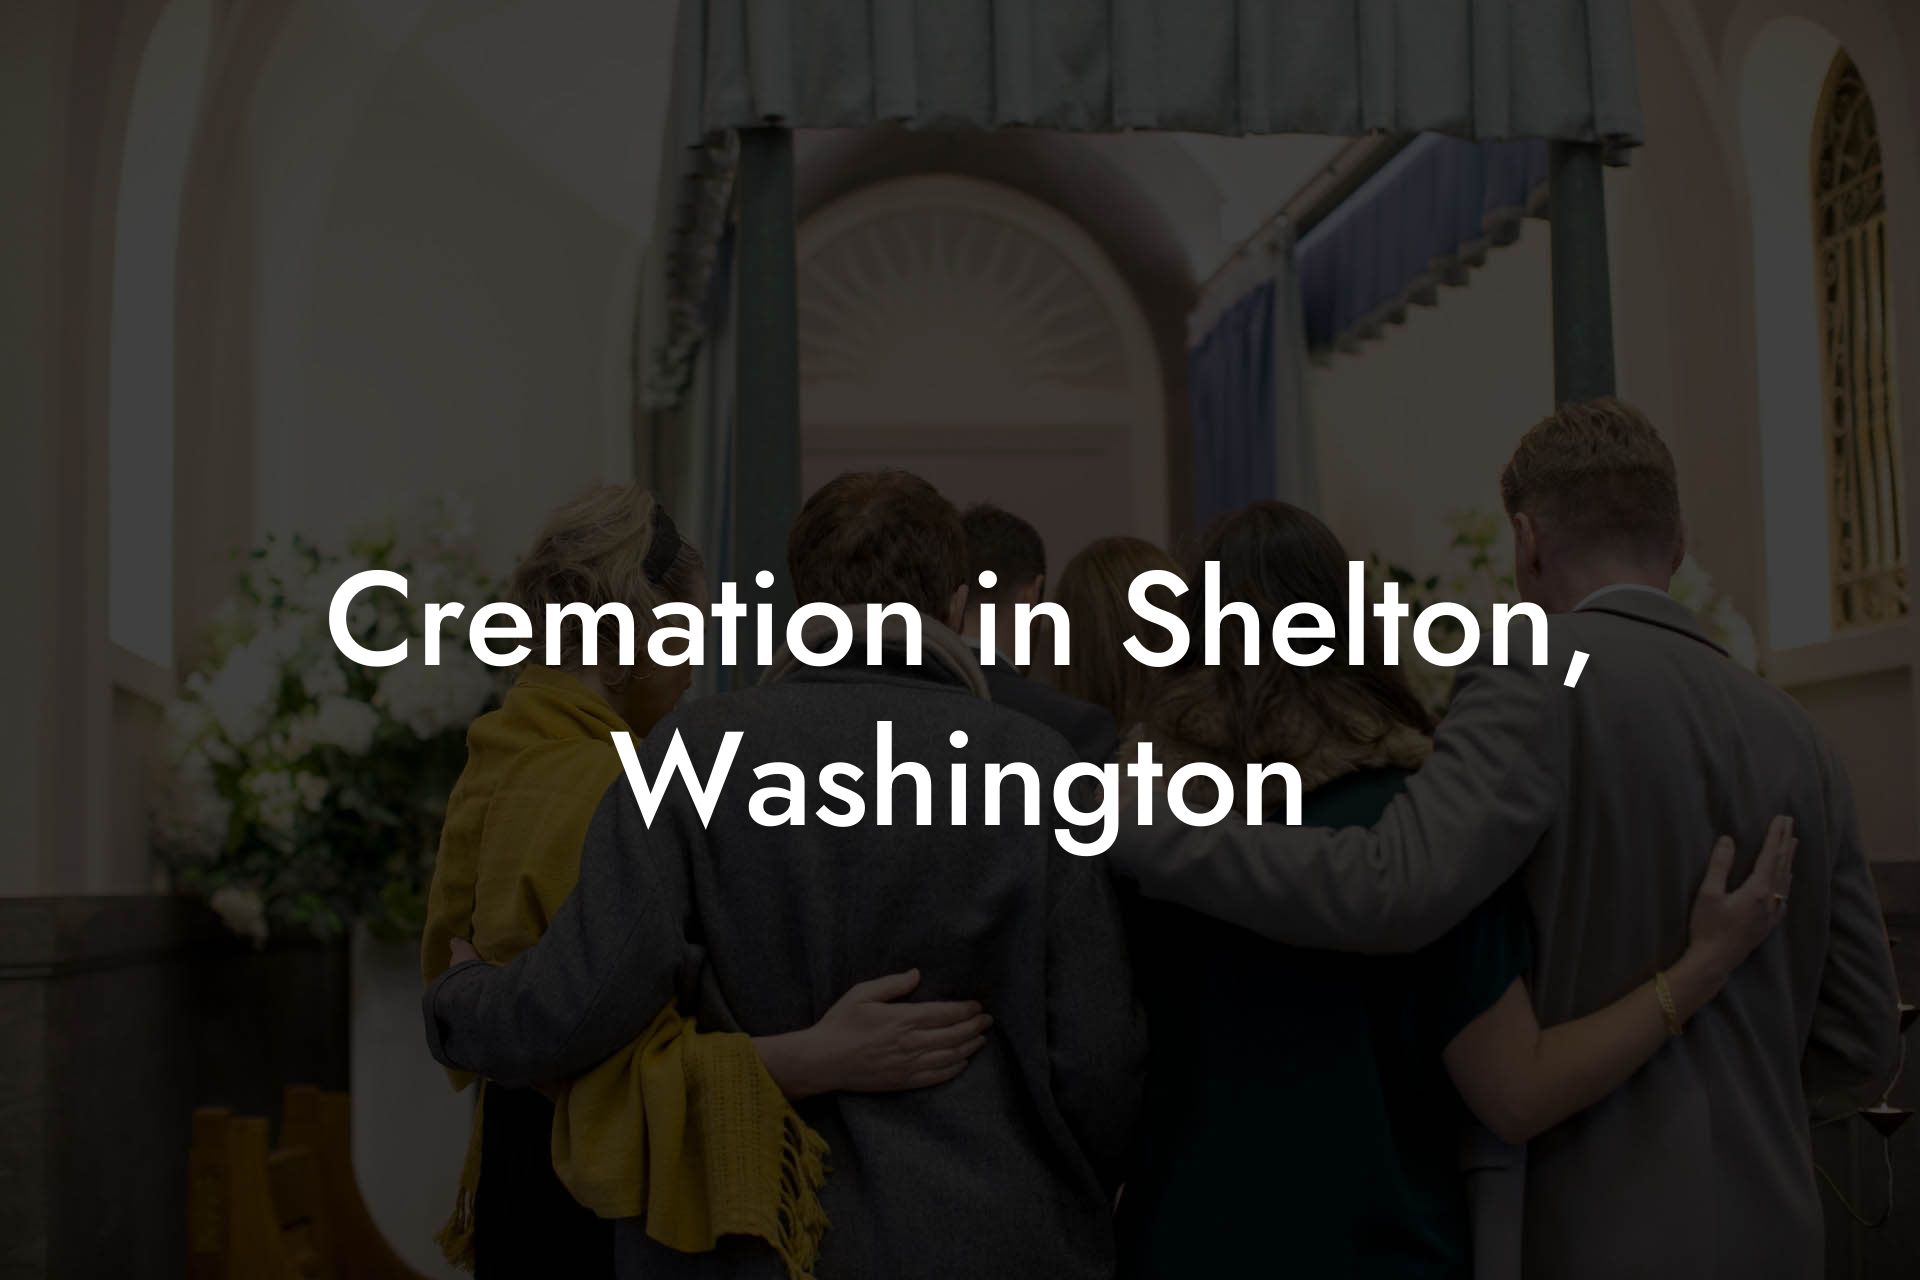 Cremation in Shelton, Washington